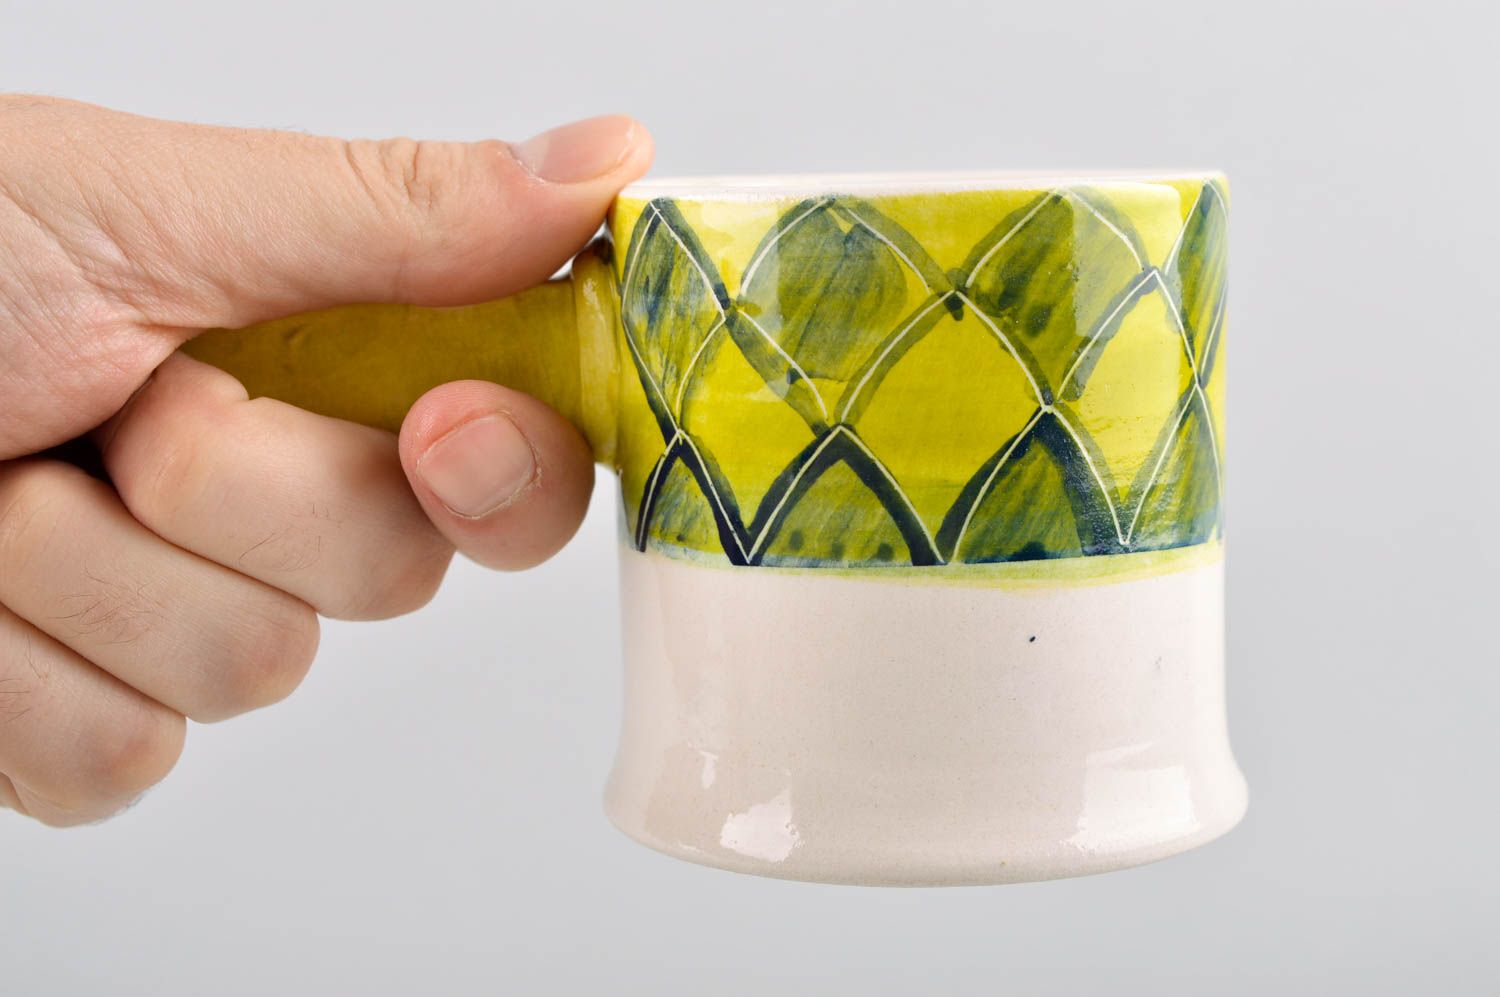 Tasse céramique faite main Tasse à thé Vaisselle design Accessoire cuisine photo 5